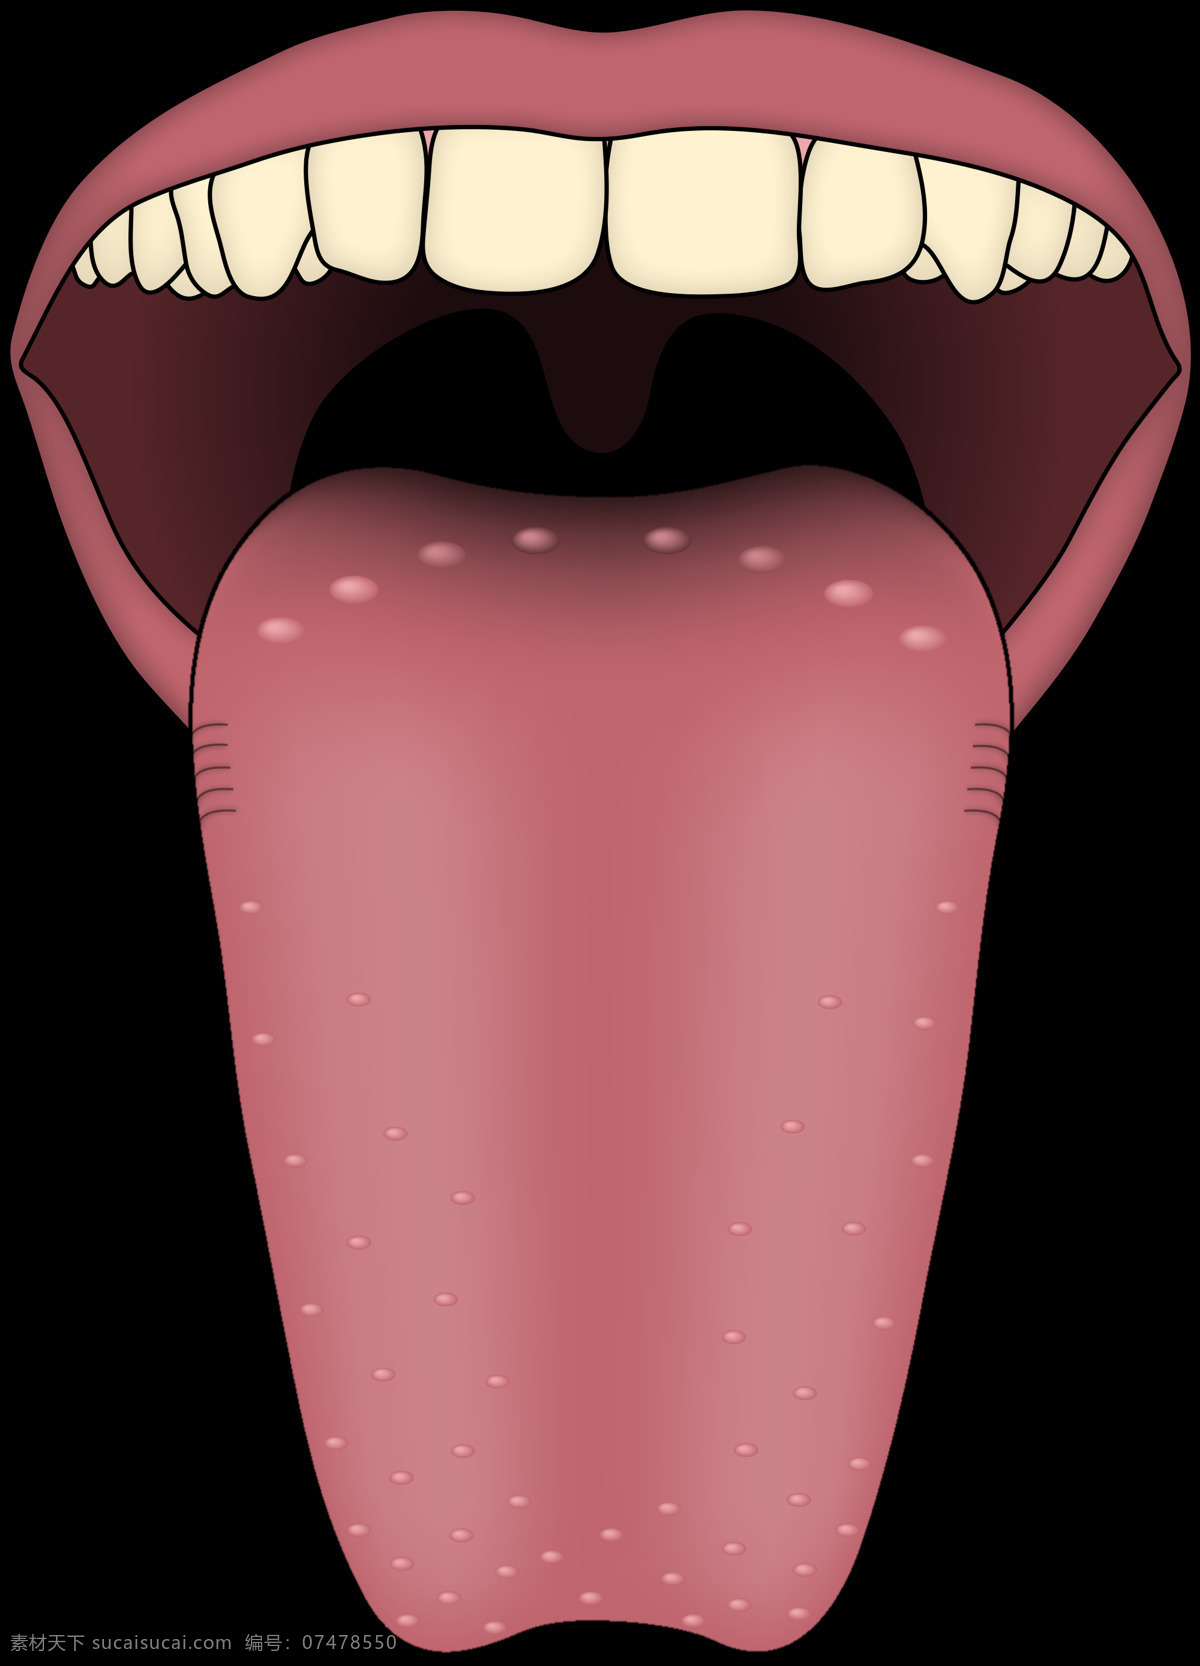 伸出 舌头 免 抠 透明 图 层 正常人 卡通舌头 舌头诱惑 卷舌头 吐舌头图片 健康 正常 舌头勾引 舌头性感 挑舌头 手绘舌头 红色舌头 手绘卡通舌头